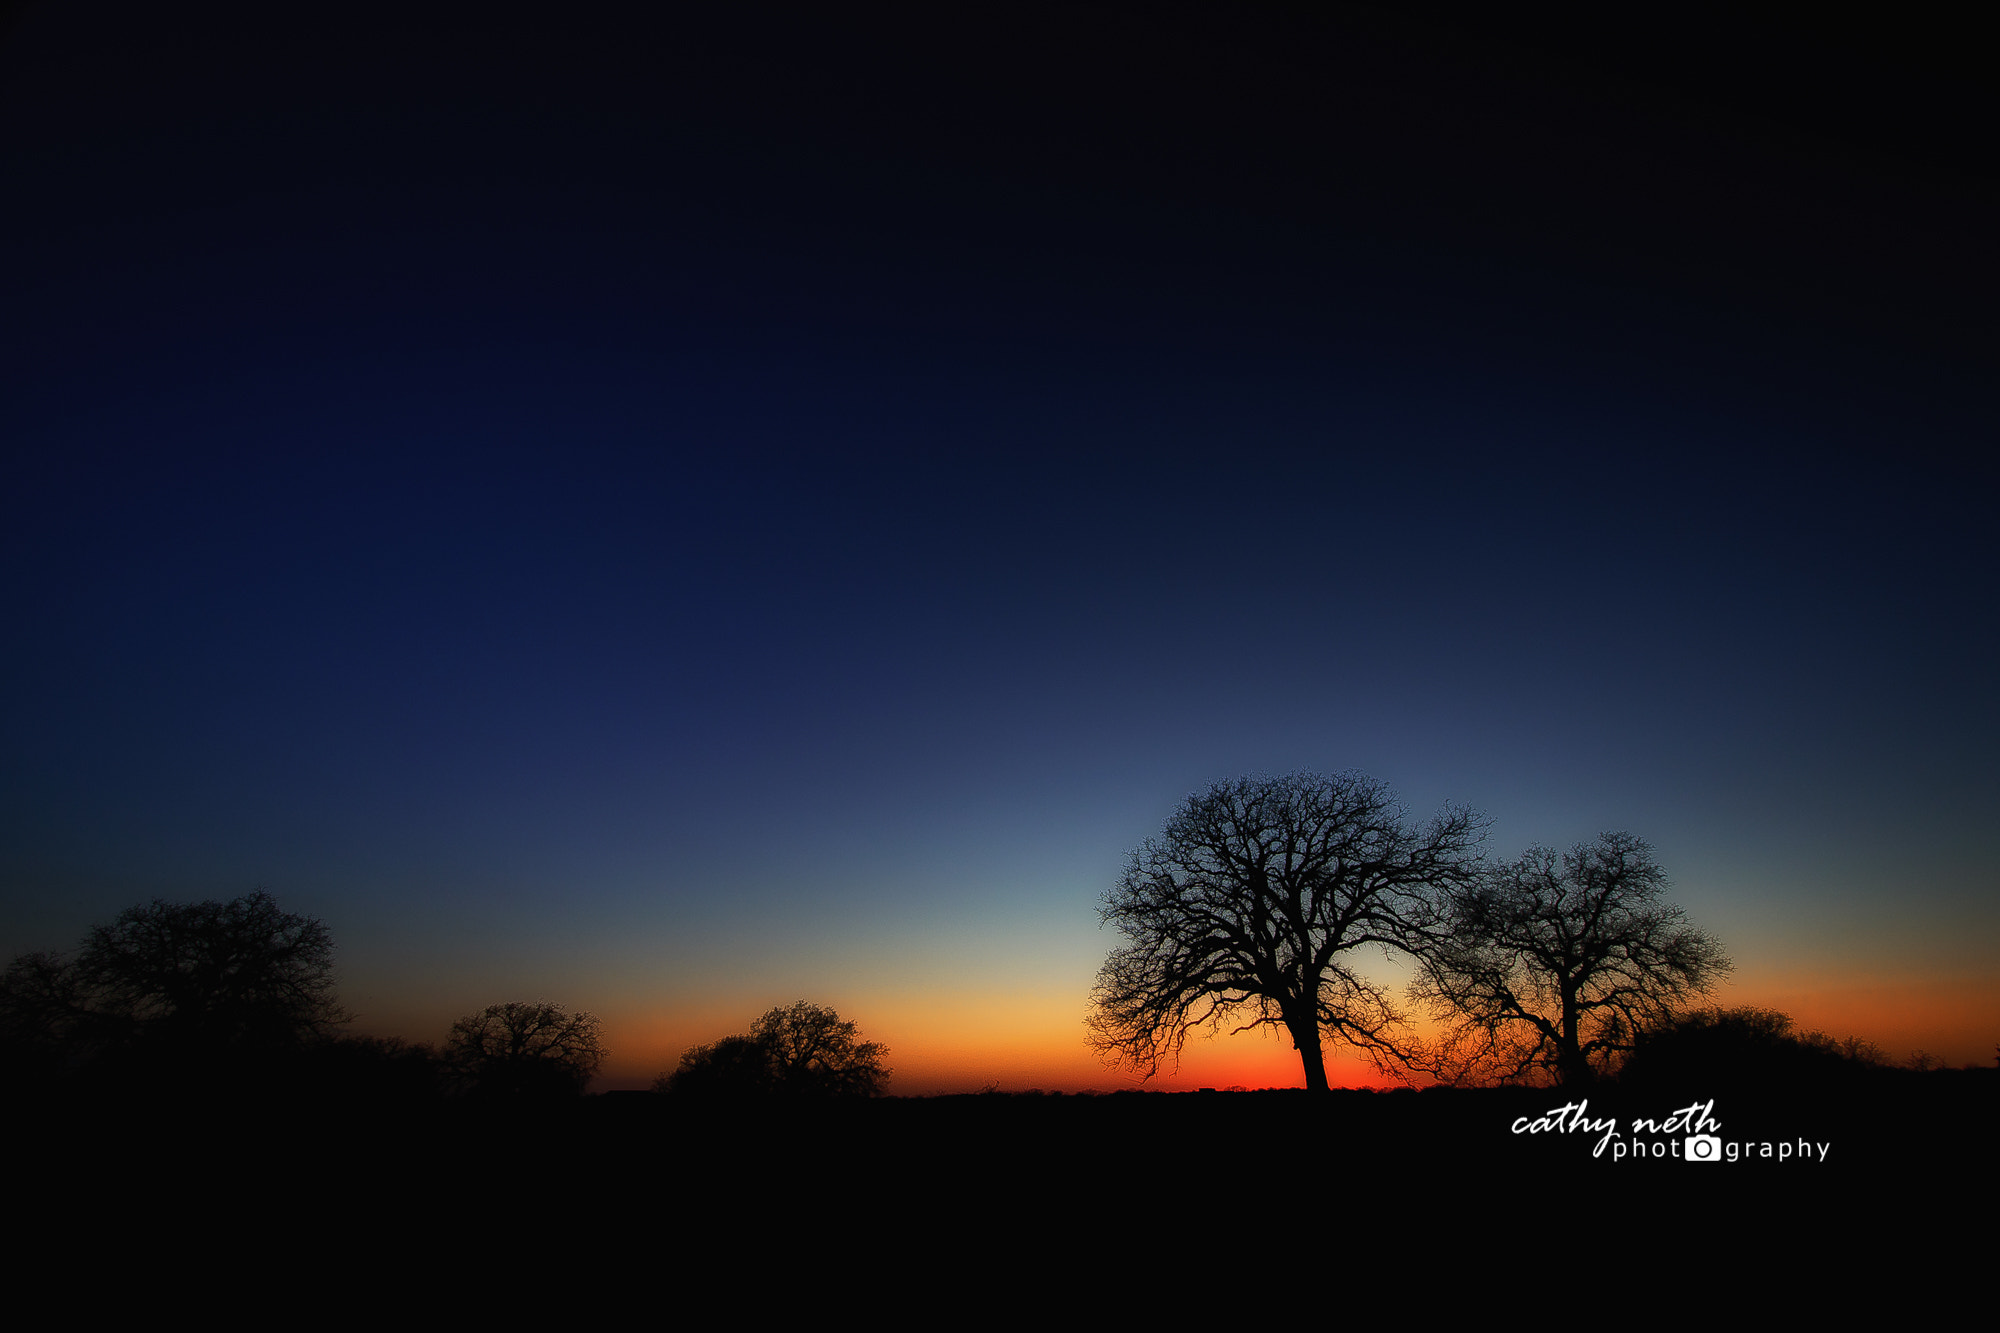 Nikon D810 + Nikon AF-S DX Nikkor 10-24mm F3-5-4.5G ED sample photo. Oak tree silhouette at sunset photography